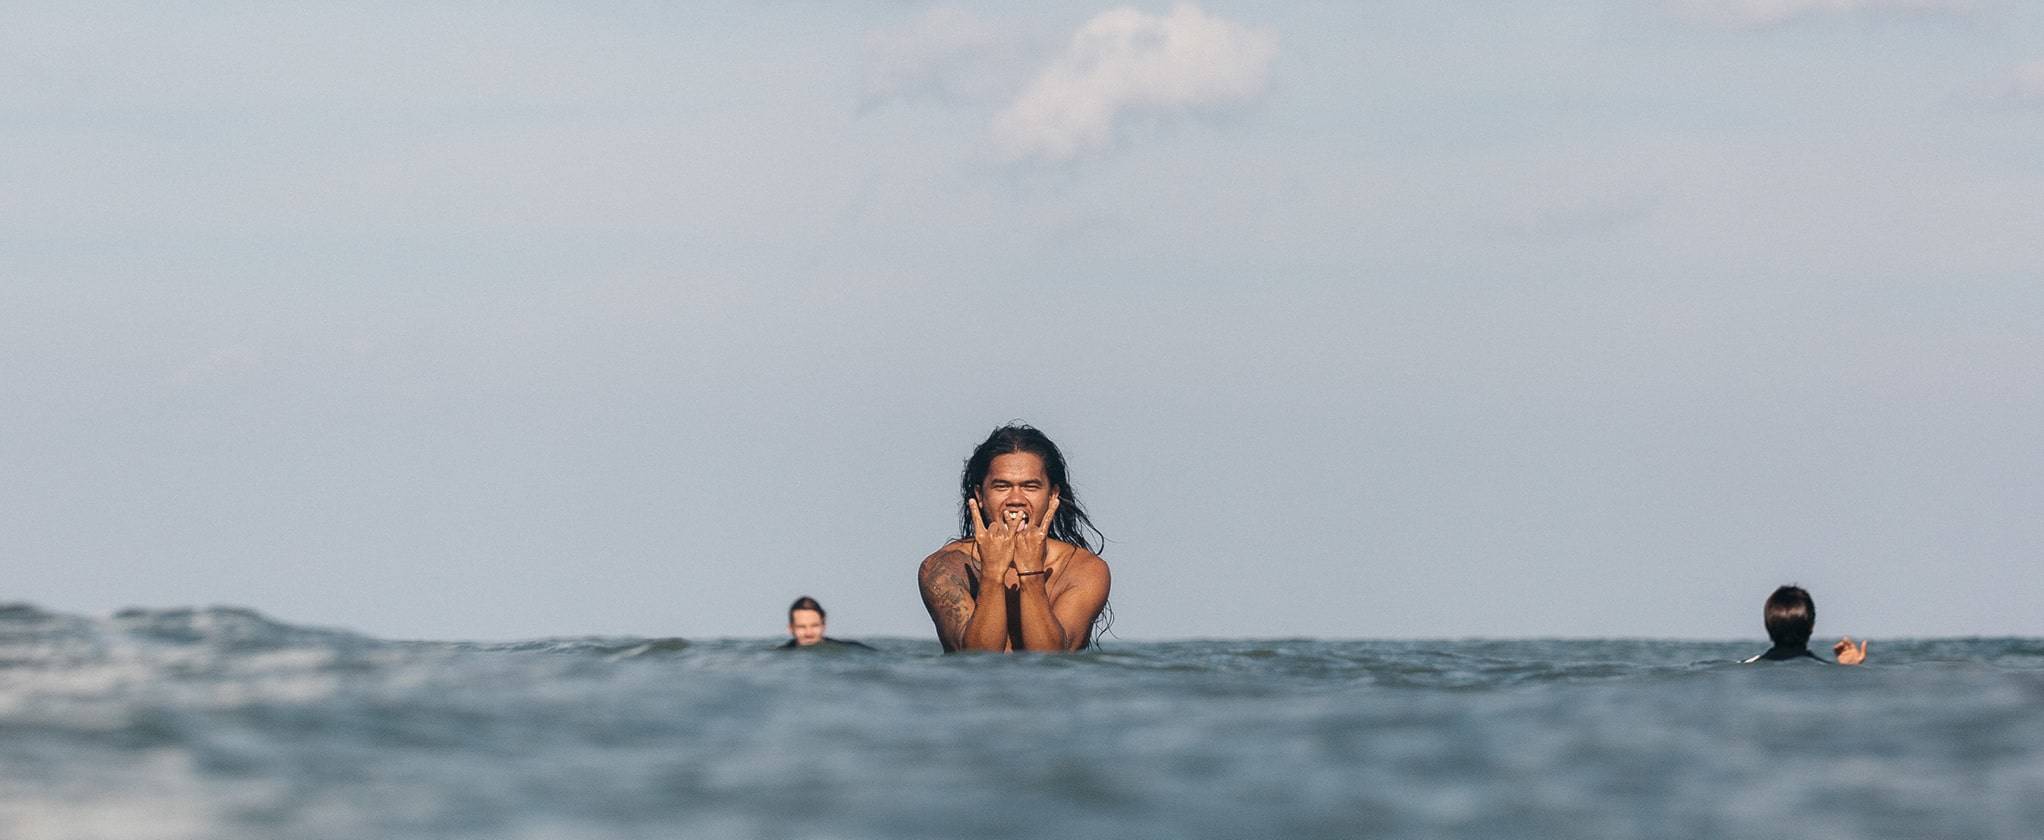 Kontaktiere uns von Montag bis Sonntag | Kima Surf Bali & Sri Lanka